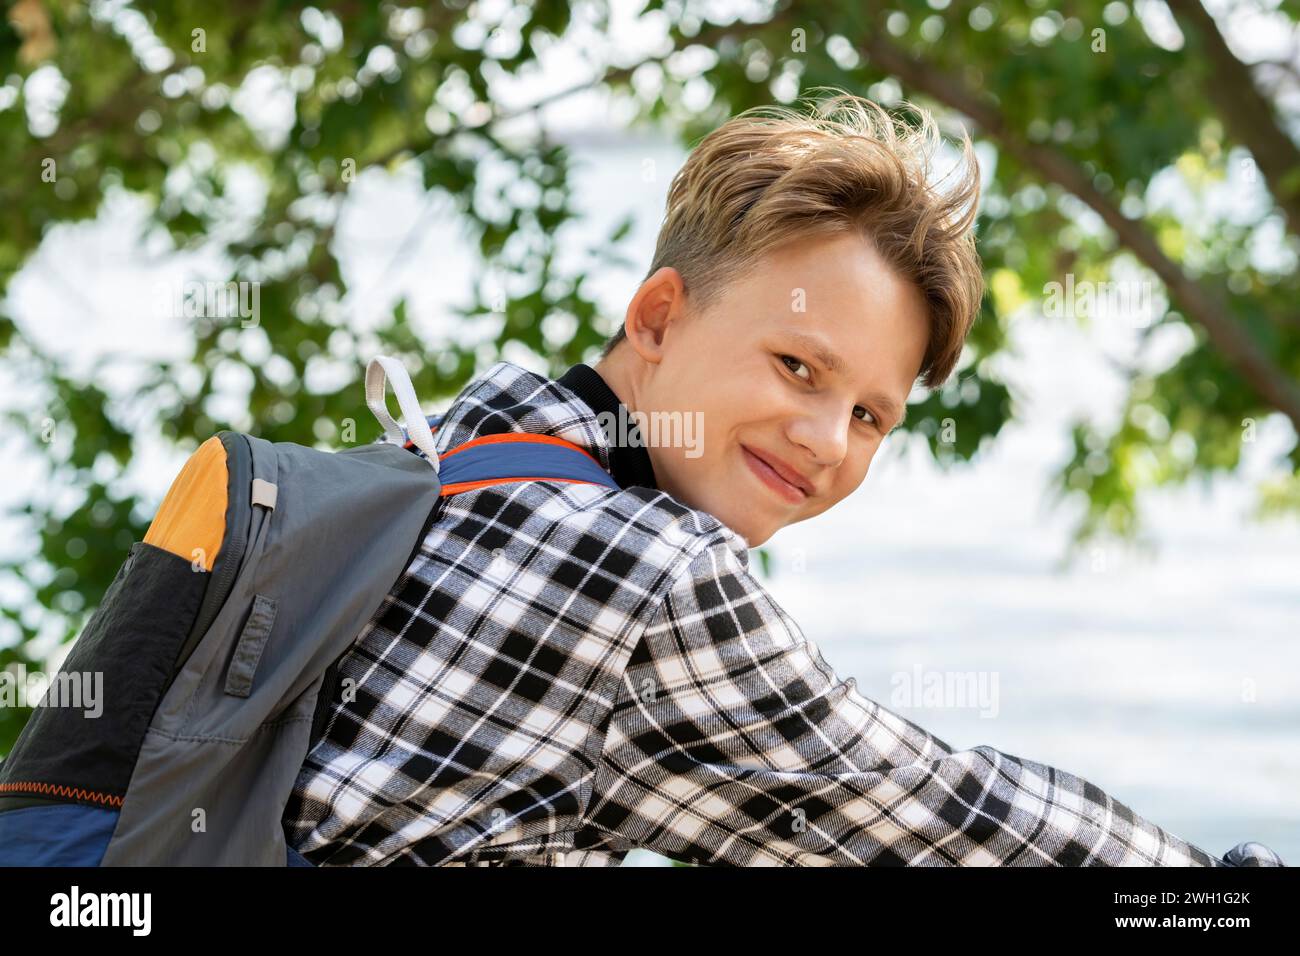 Ritratto di un ragazzo sorridente con i capelli biondi in camicia a quadri con zaino seduto in bicicletta, su alberi sfocati e sullo sfondo riflettente del laghetto nelle giornate di sole Foto Stock